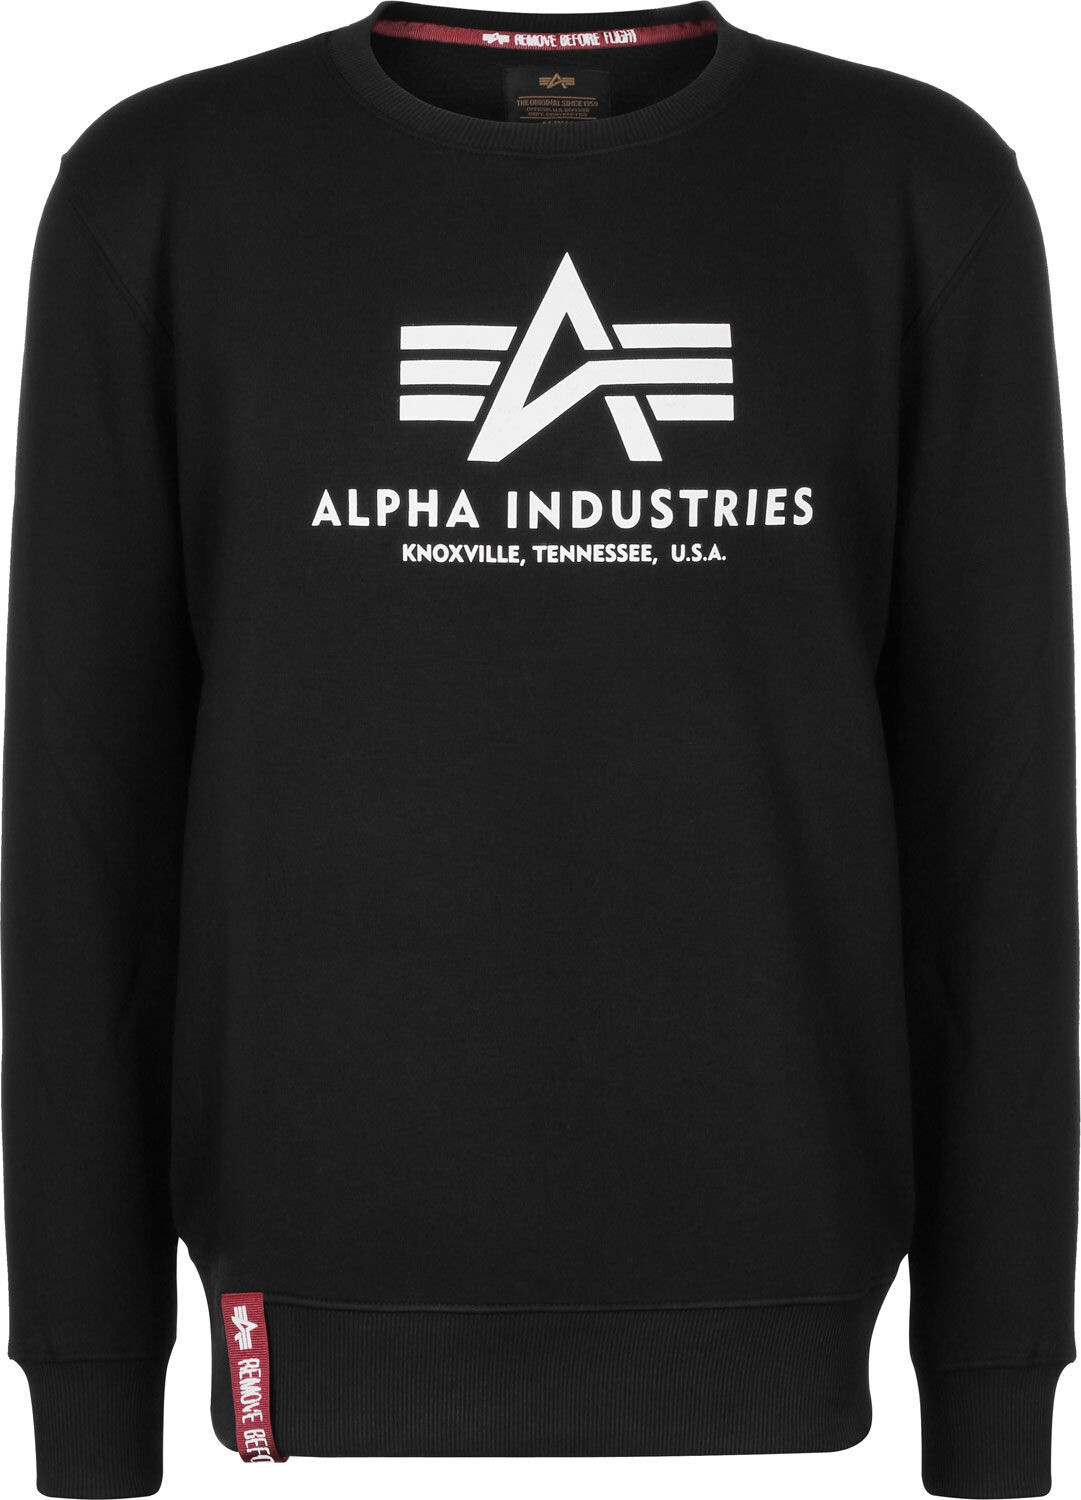 Preisvergleich Alpha Sweater ab (178302) Basic | bei € Industries 24,95